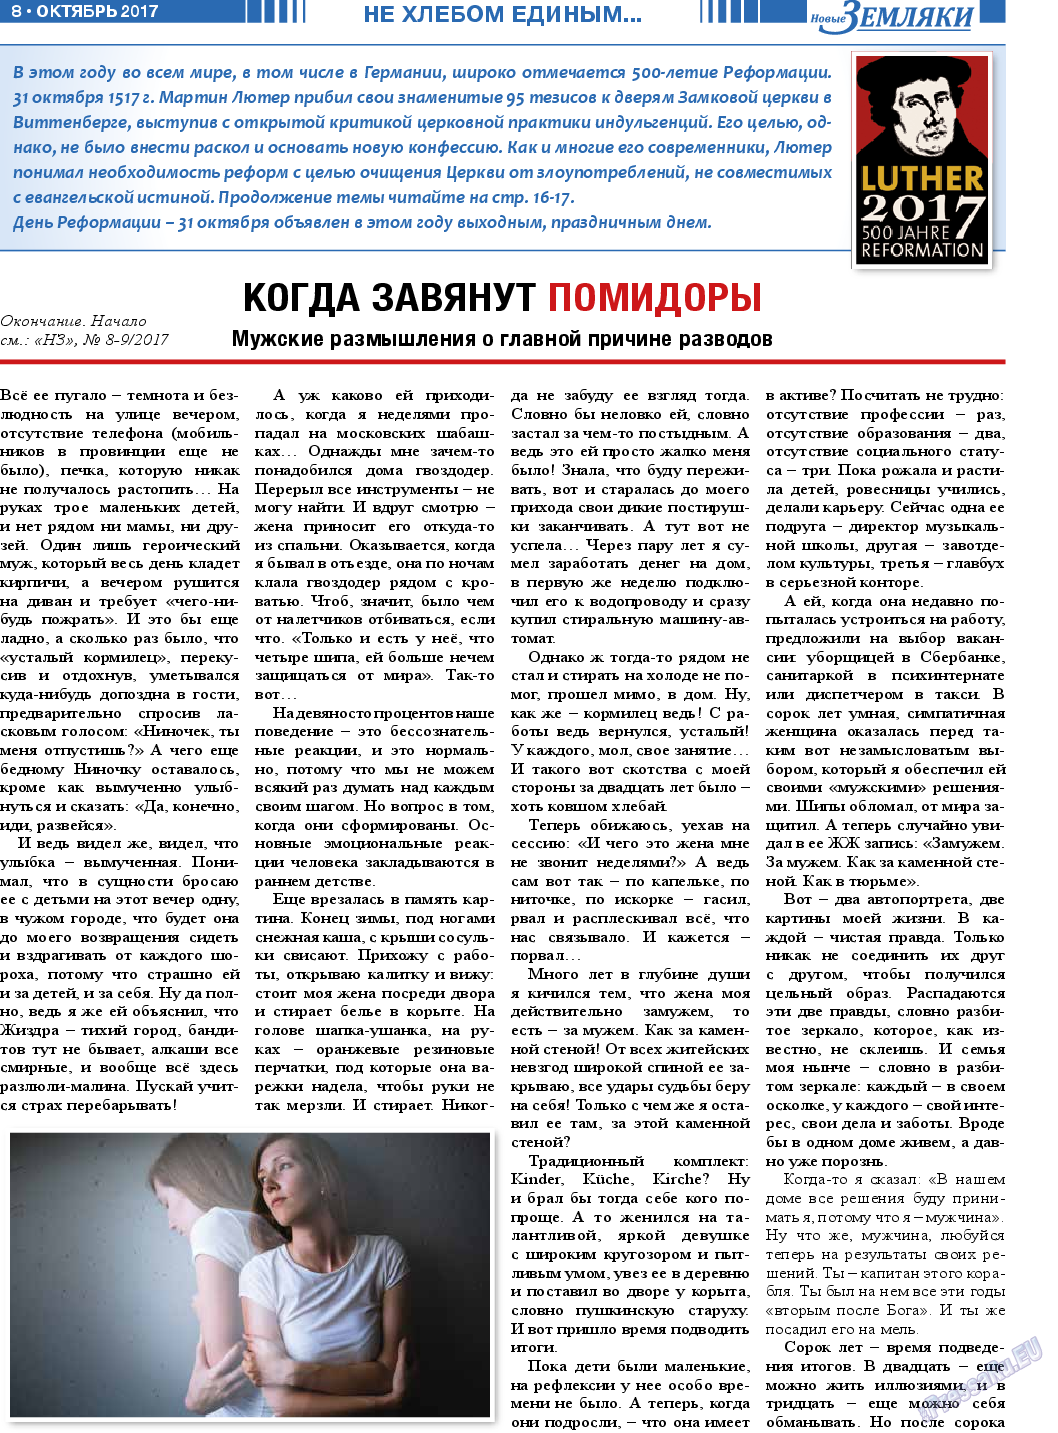 Новые Земляки, газета. 2017 №10 стр.8